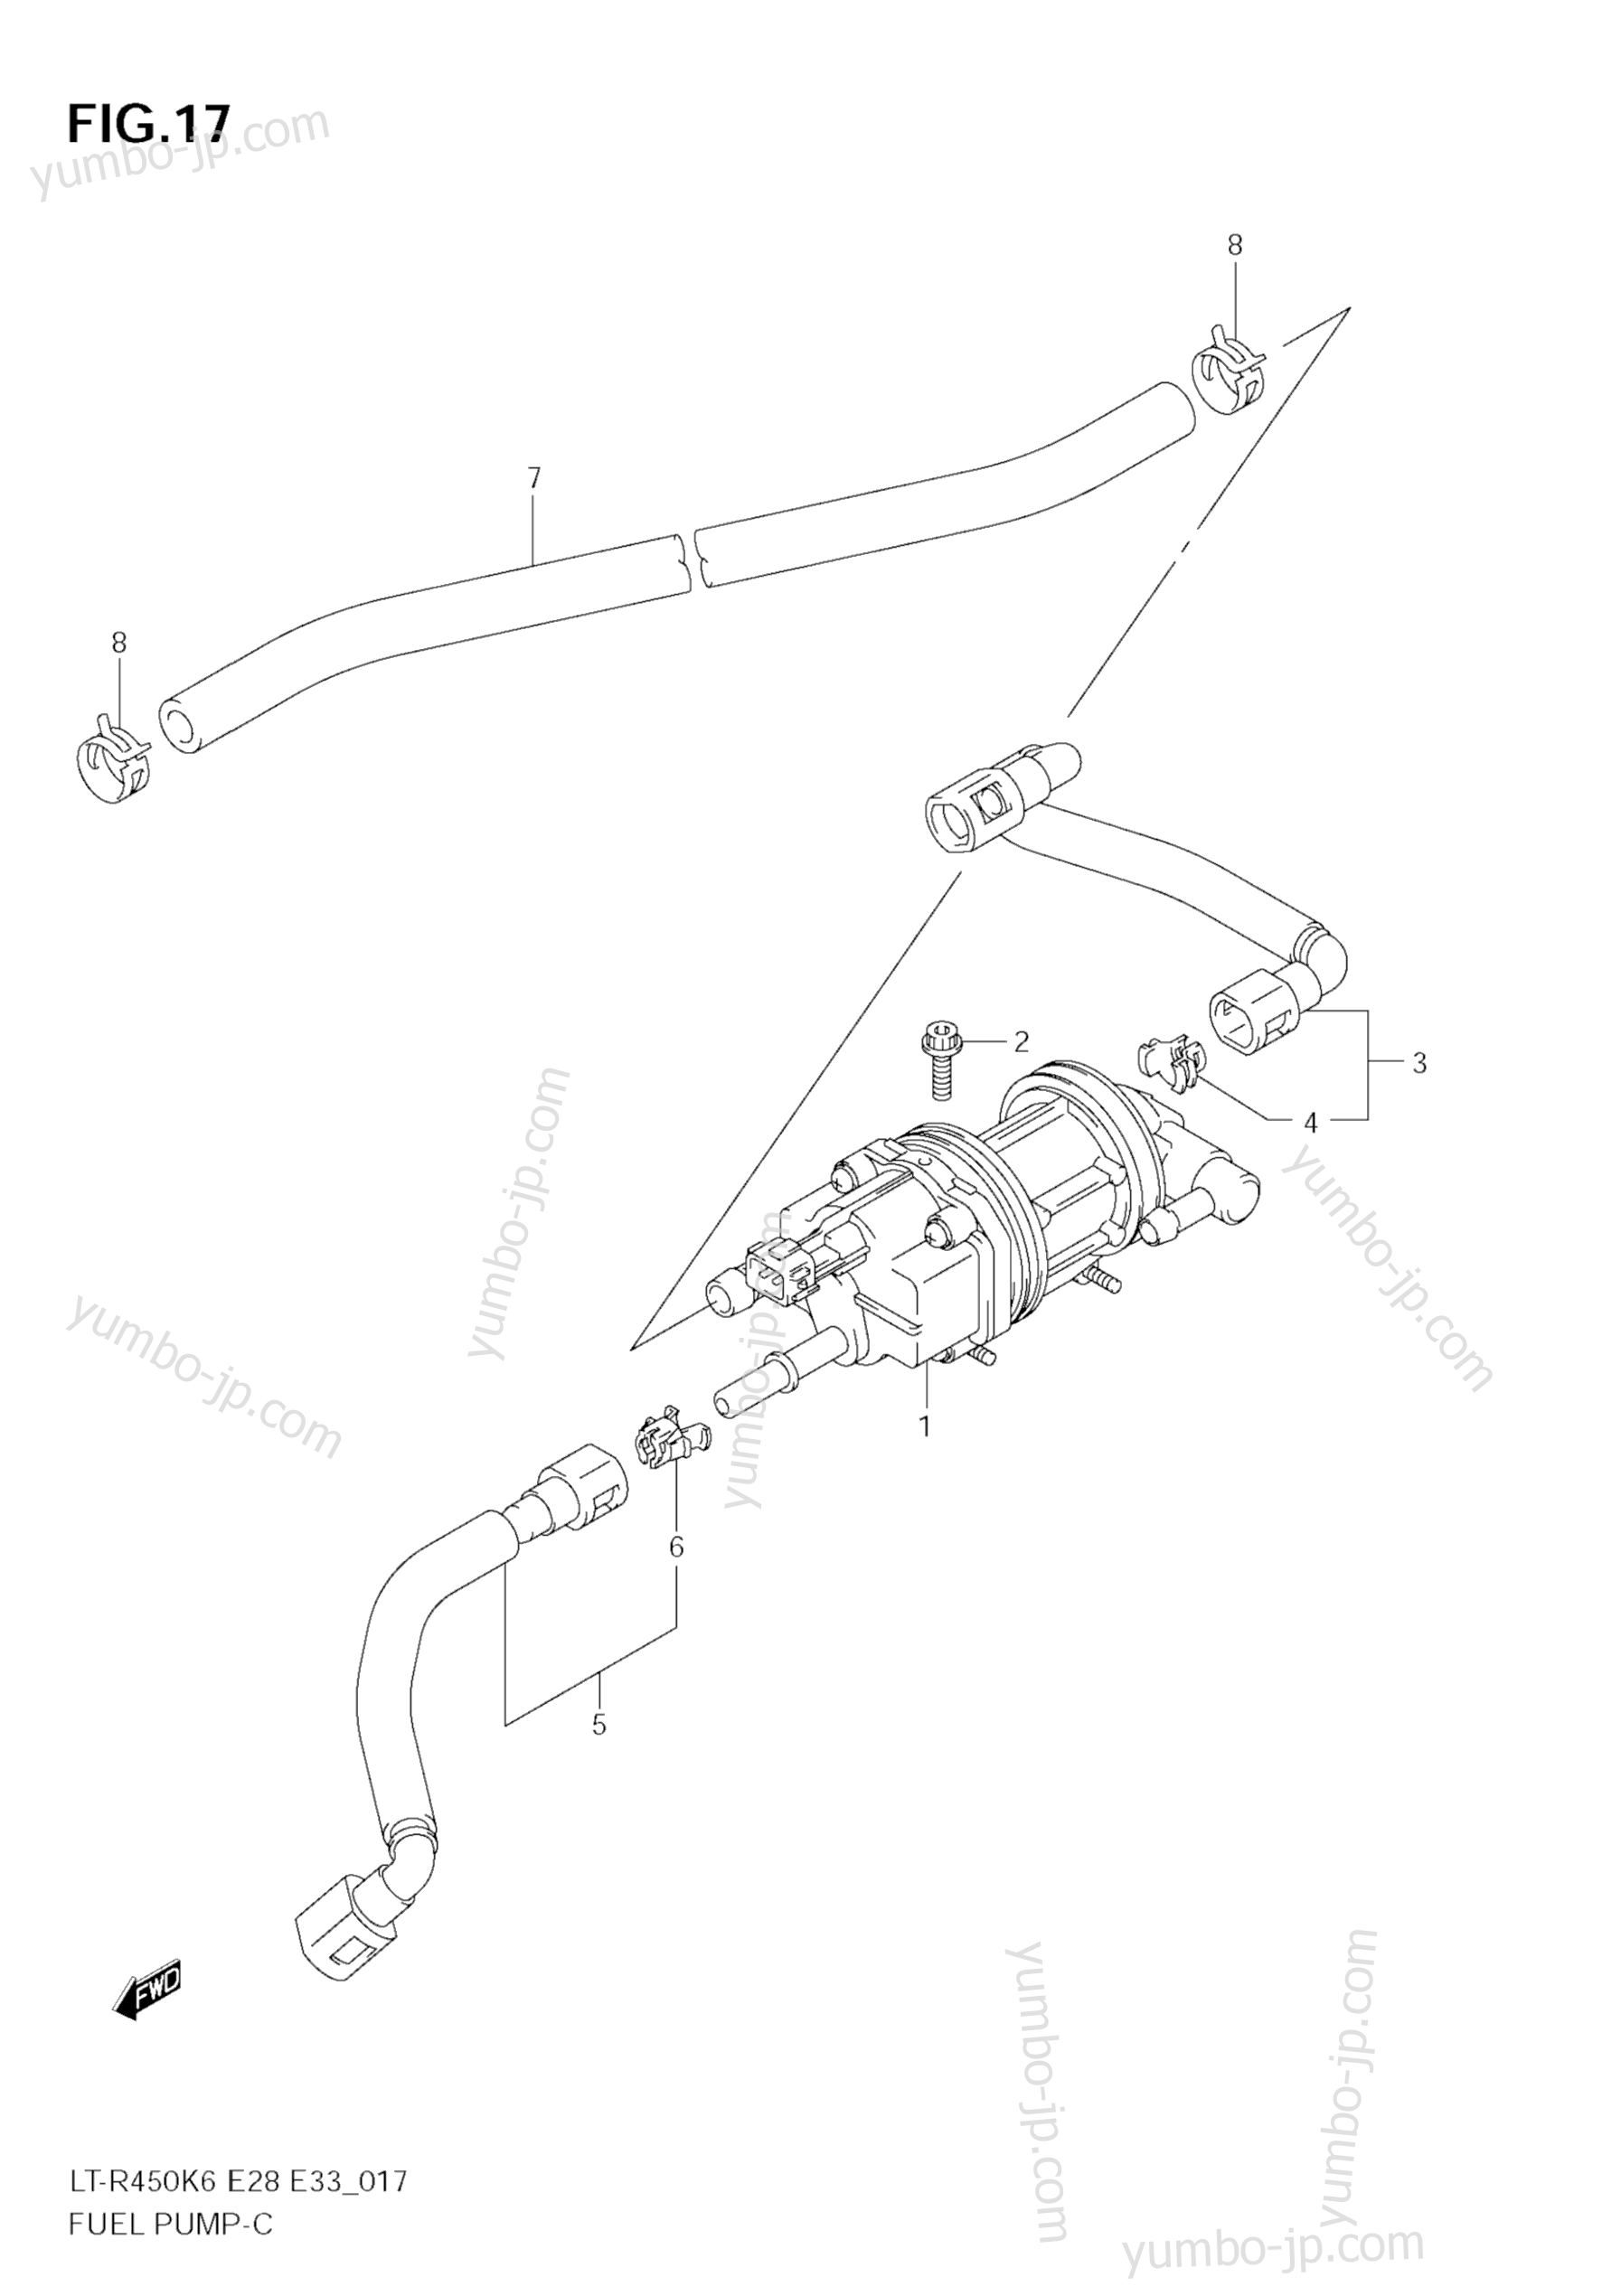 Топливный насос для квадроциклов SUZUKI QuadRacer (LT-R450) 2007 г.